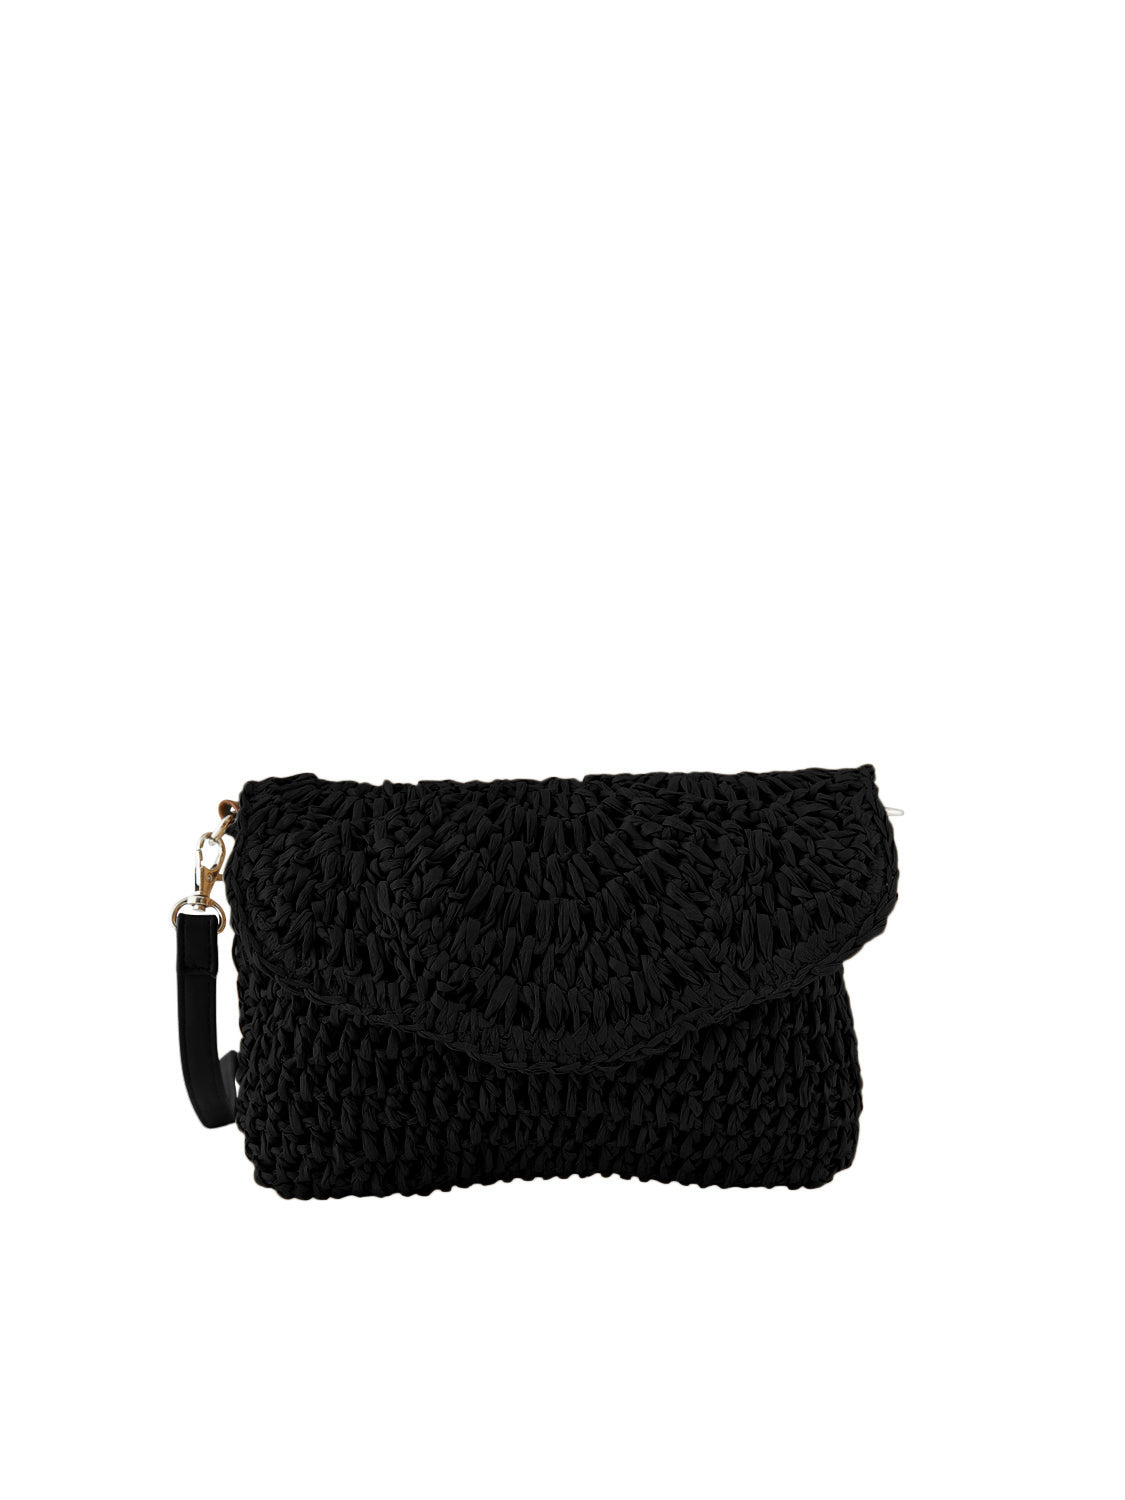 PCVIOLET Handbag - Black